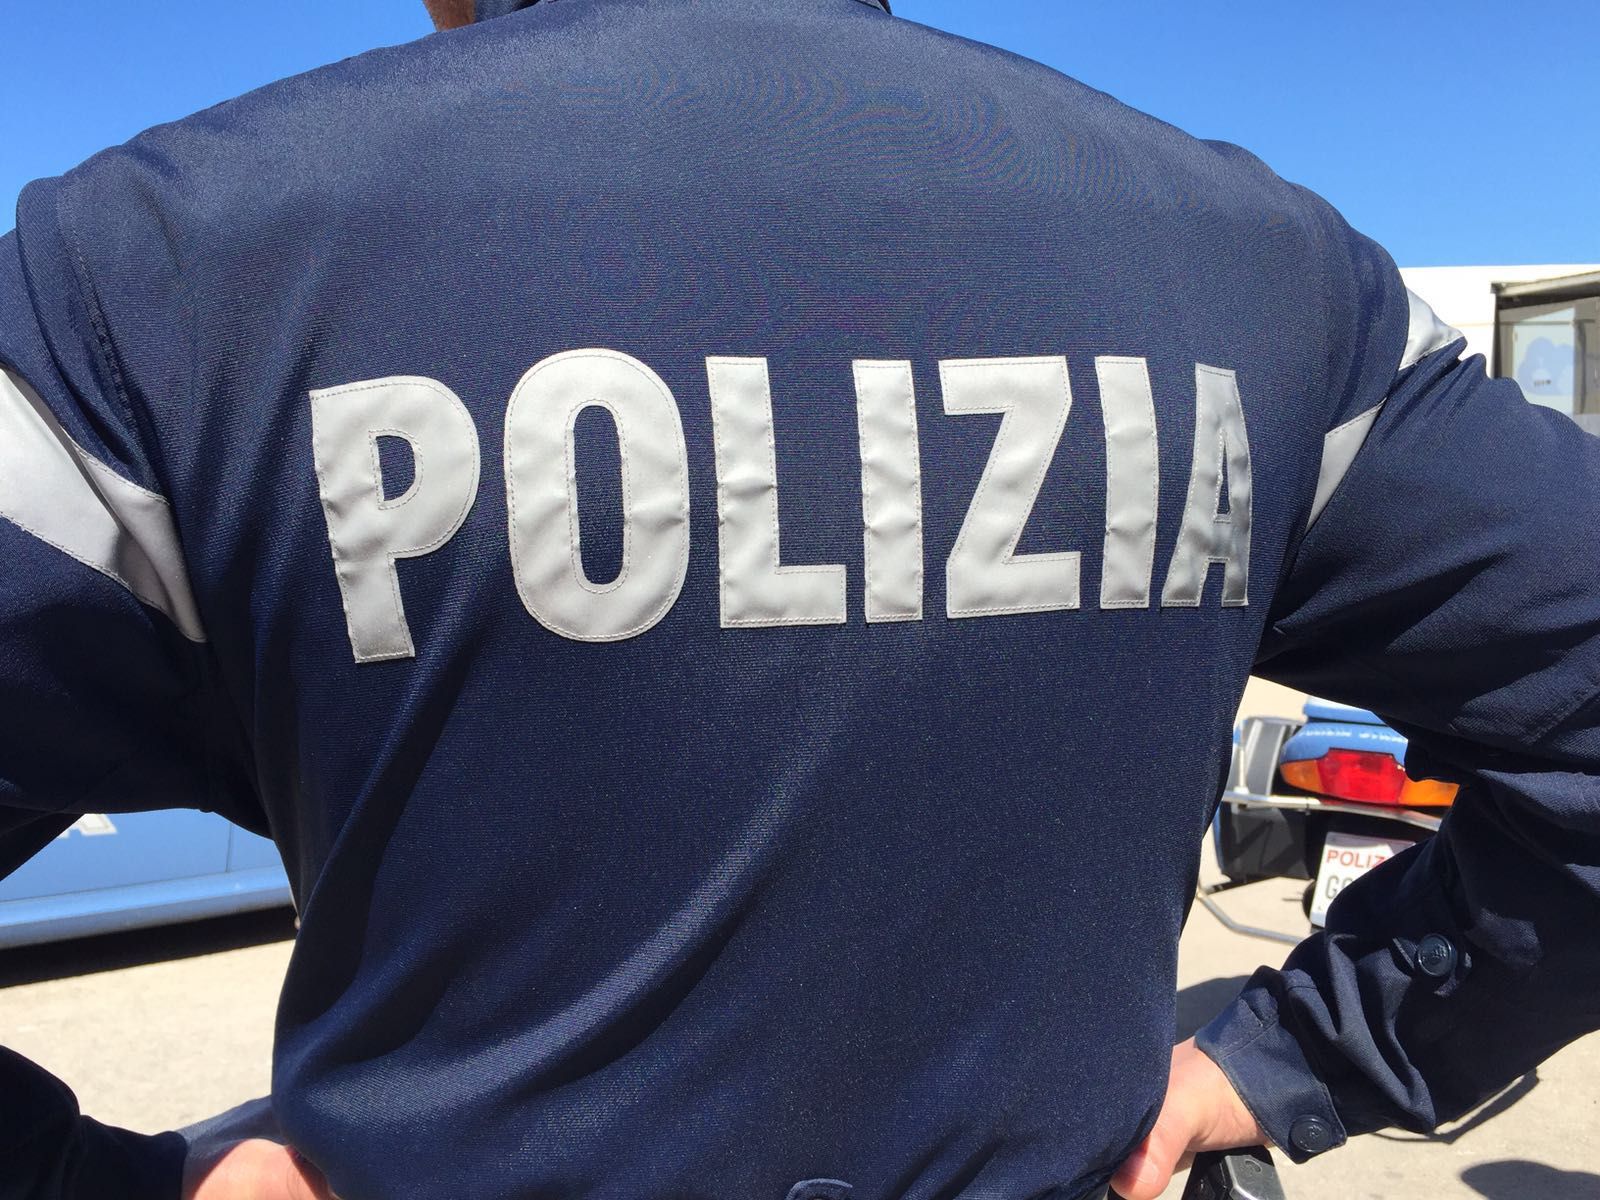 Accoltellamento in piazza del Carmine: la Polizia arresta un 46enne